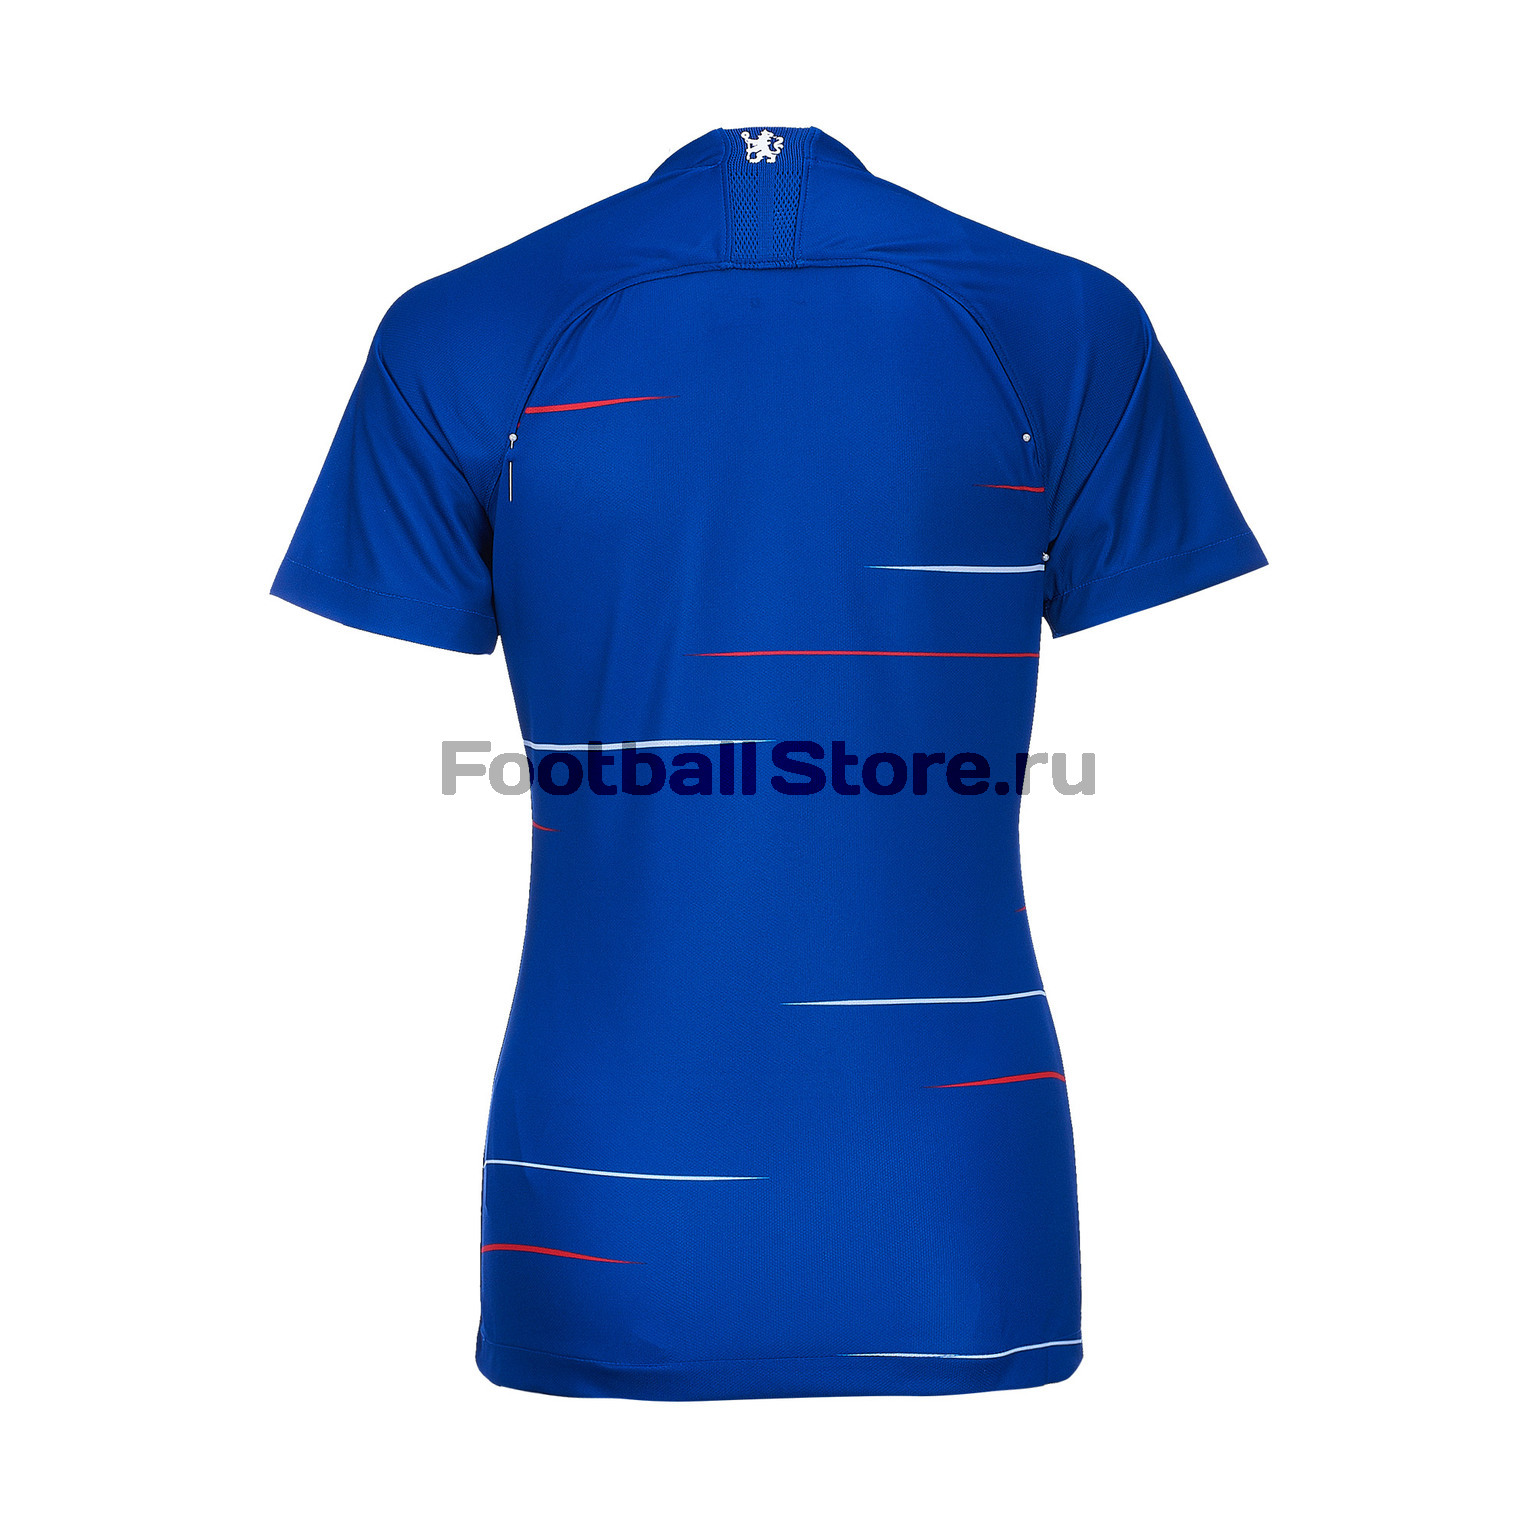 Женская домашняя игровая футболка Nike Chelsea 2018/19